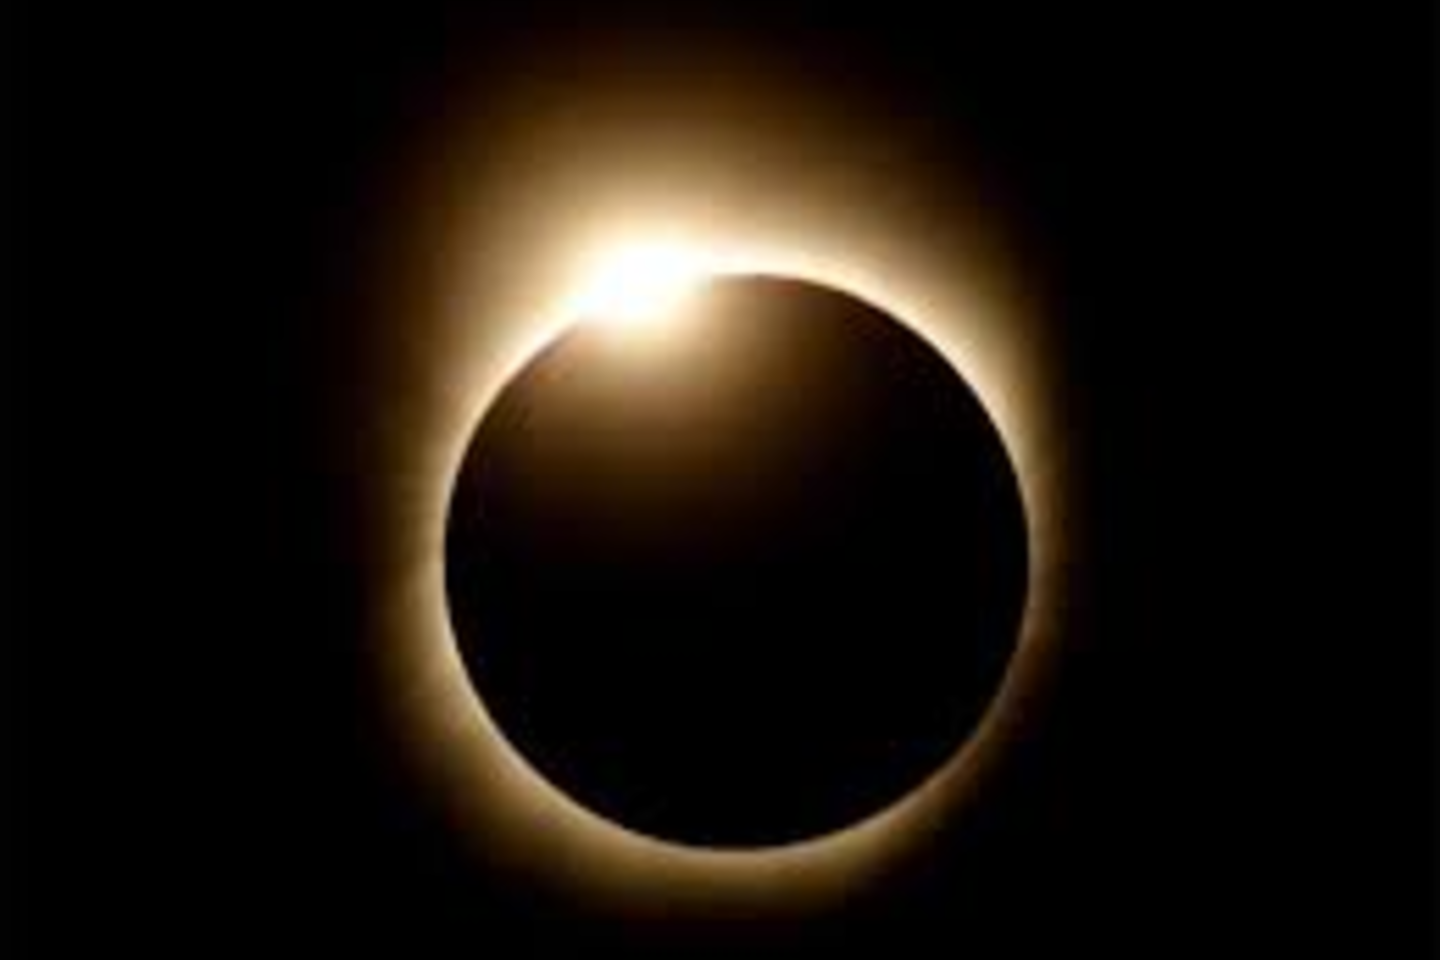 Le 20 mars... Le Printemps commence par une éclipse solaire!!